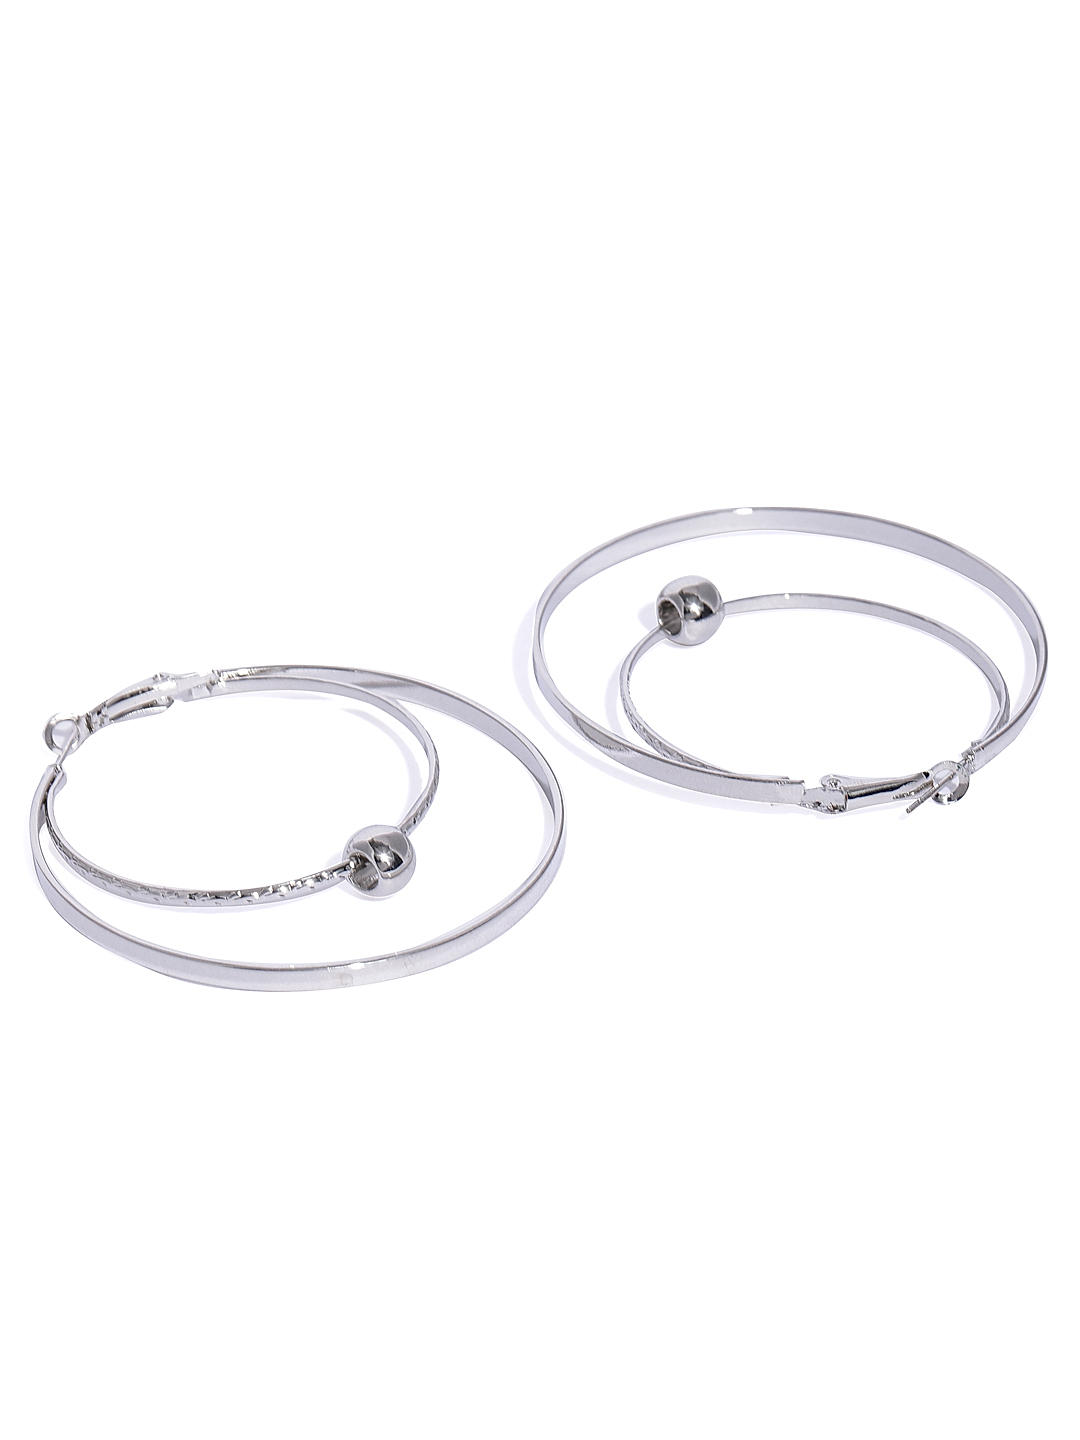 Buy Silver Earrings for Women by Sohi Online  Ajiocom